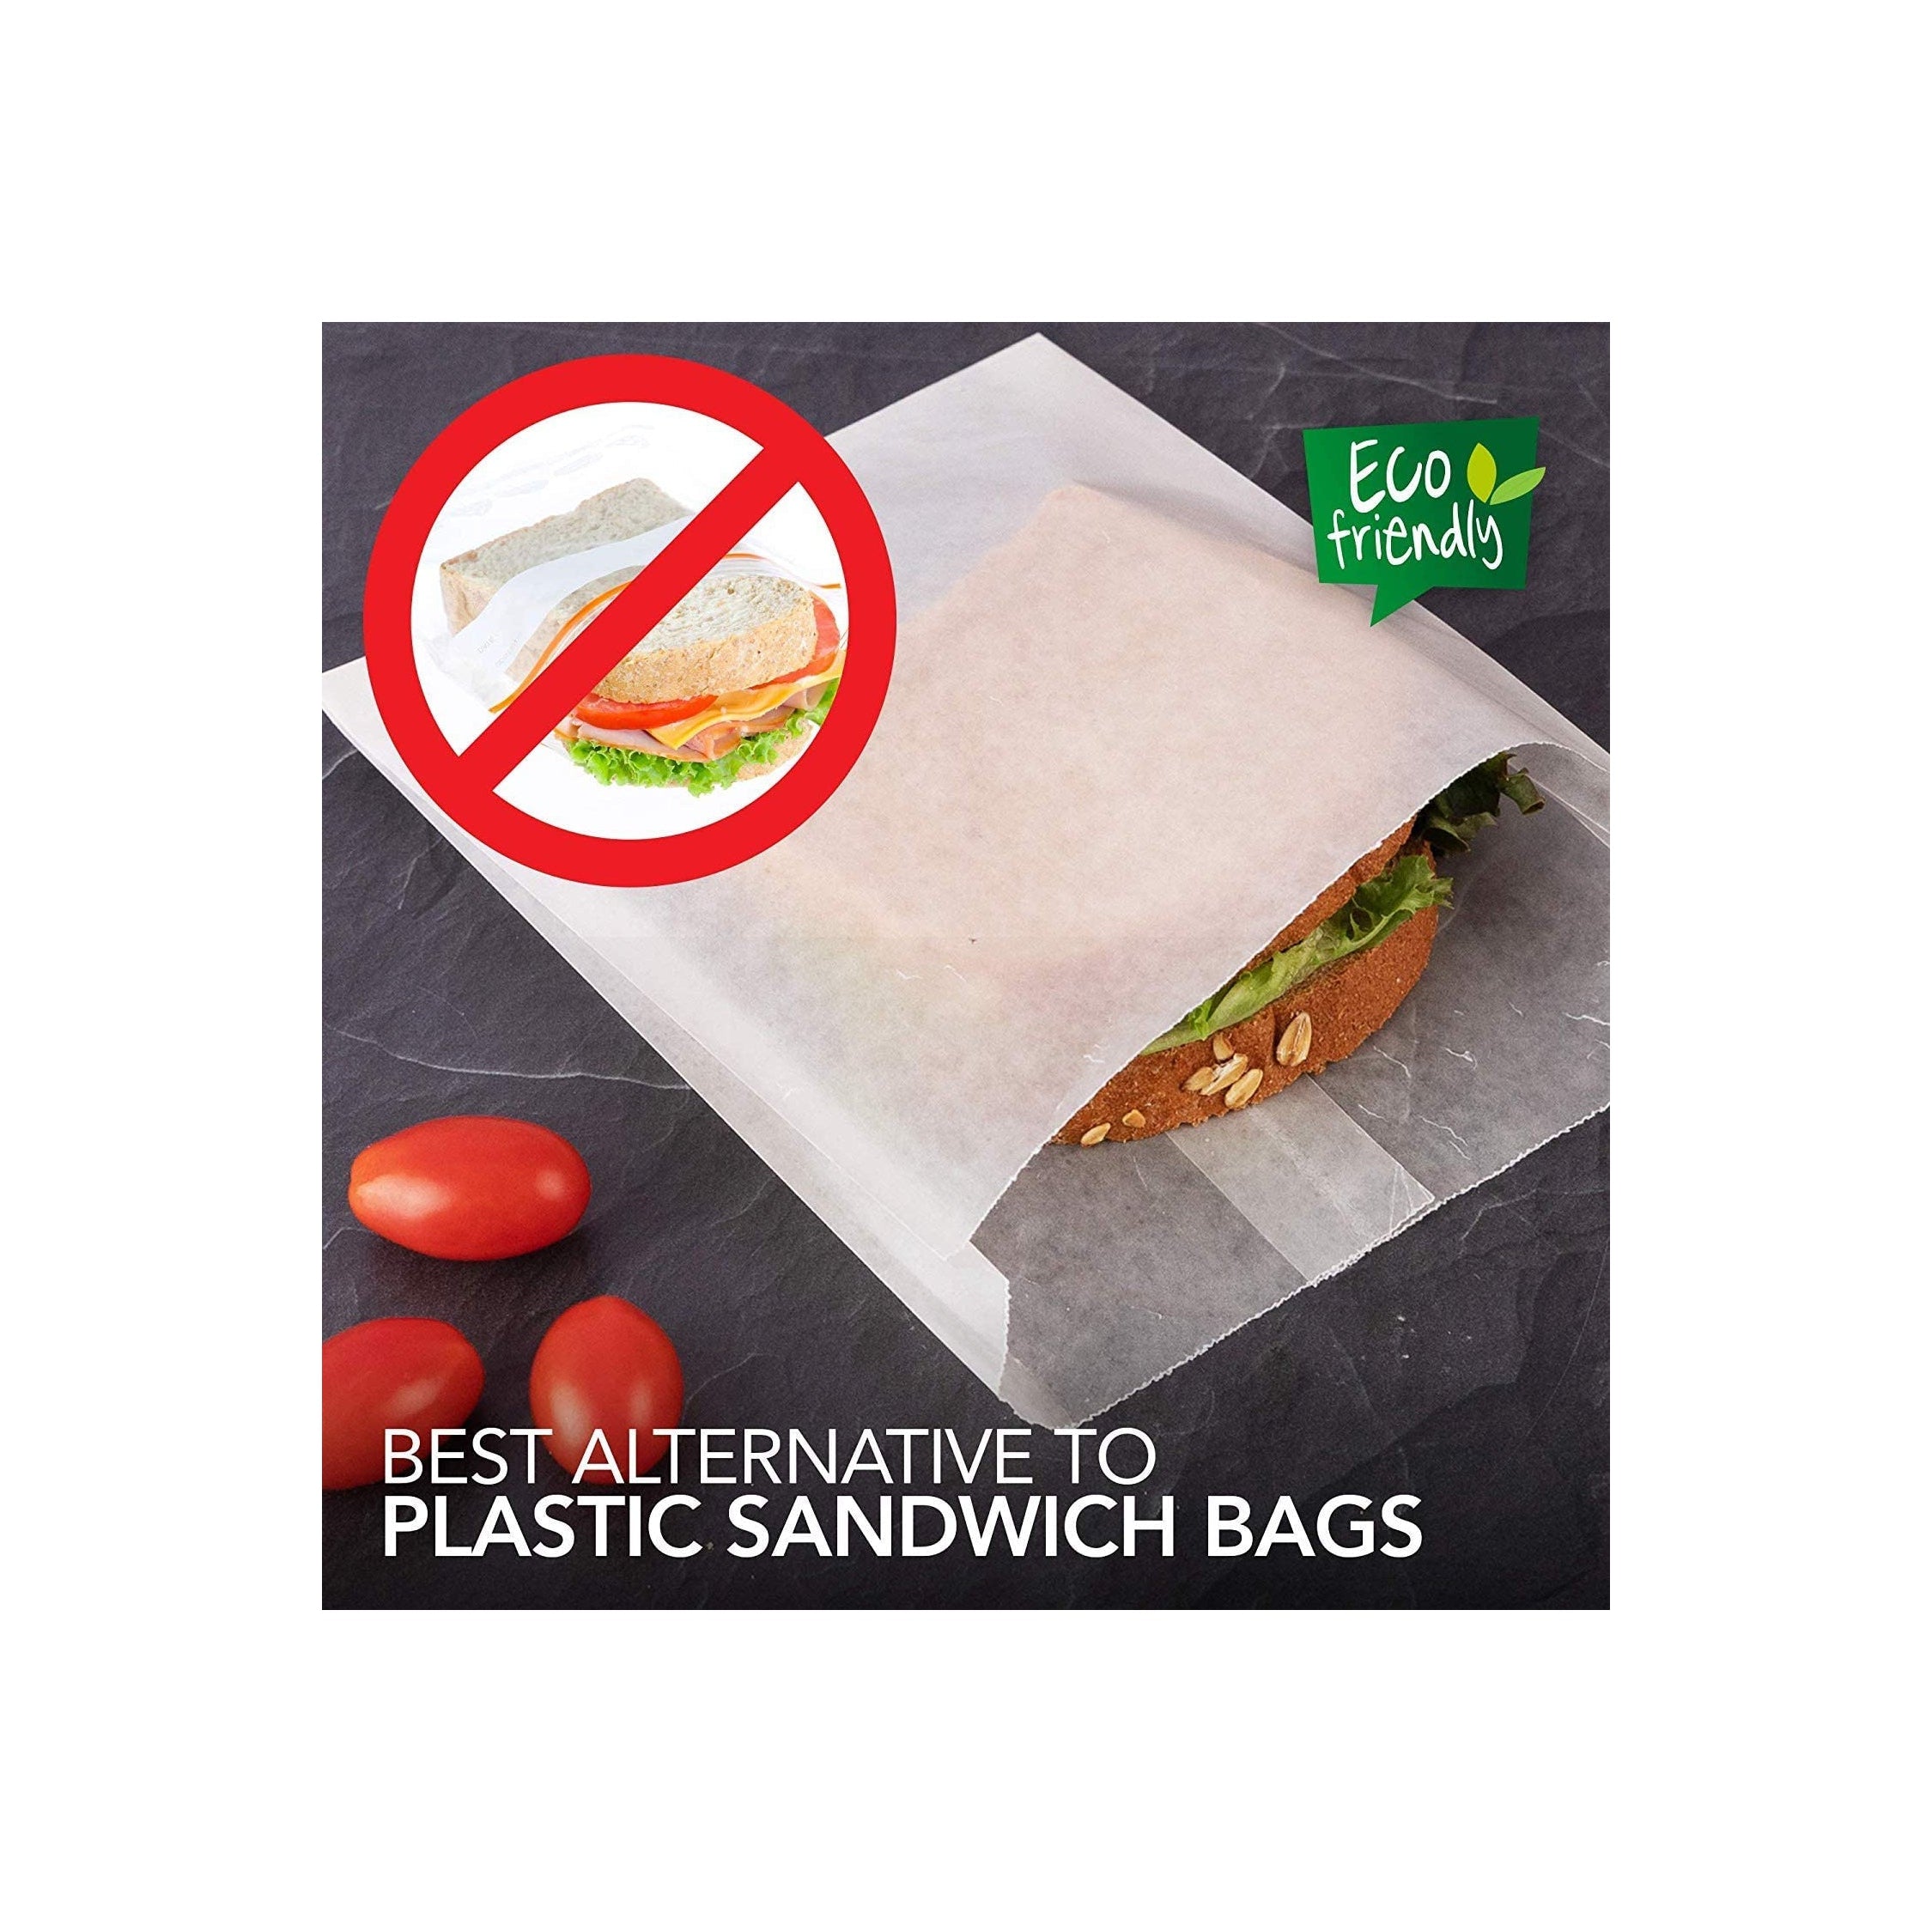 Wax Paper Sandwich Bags